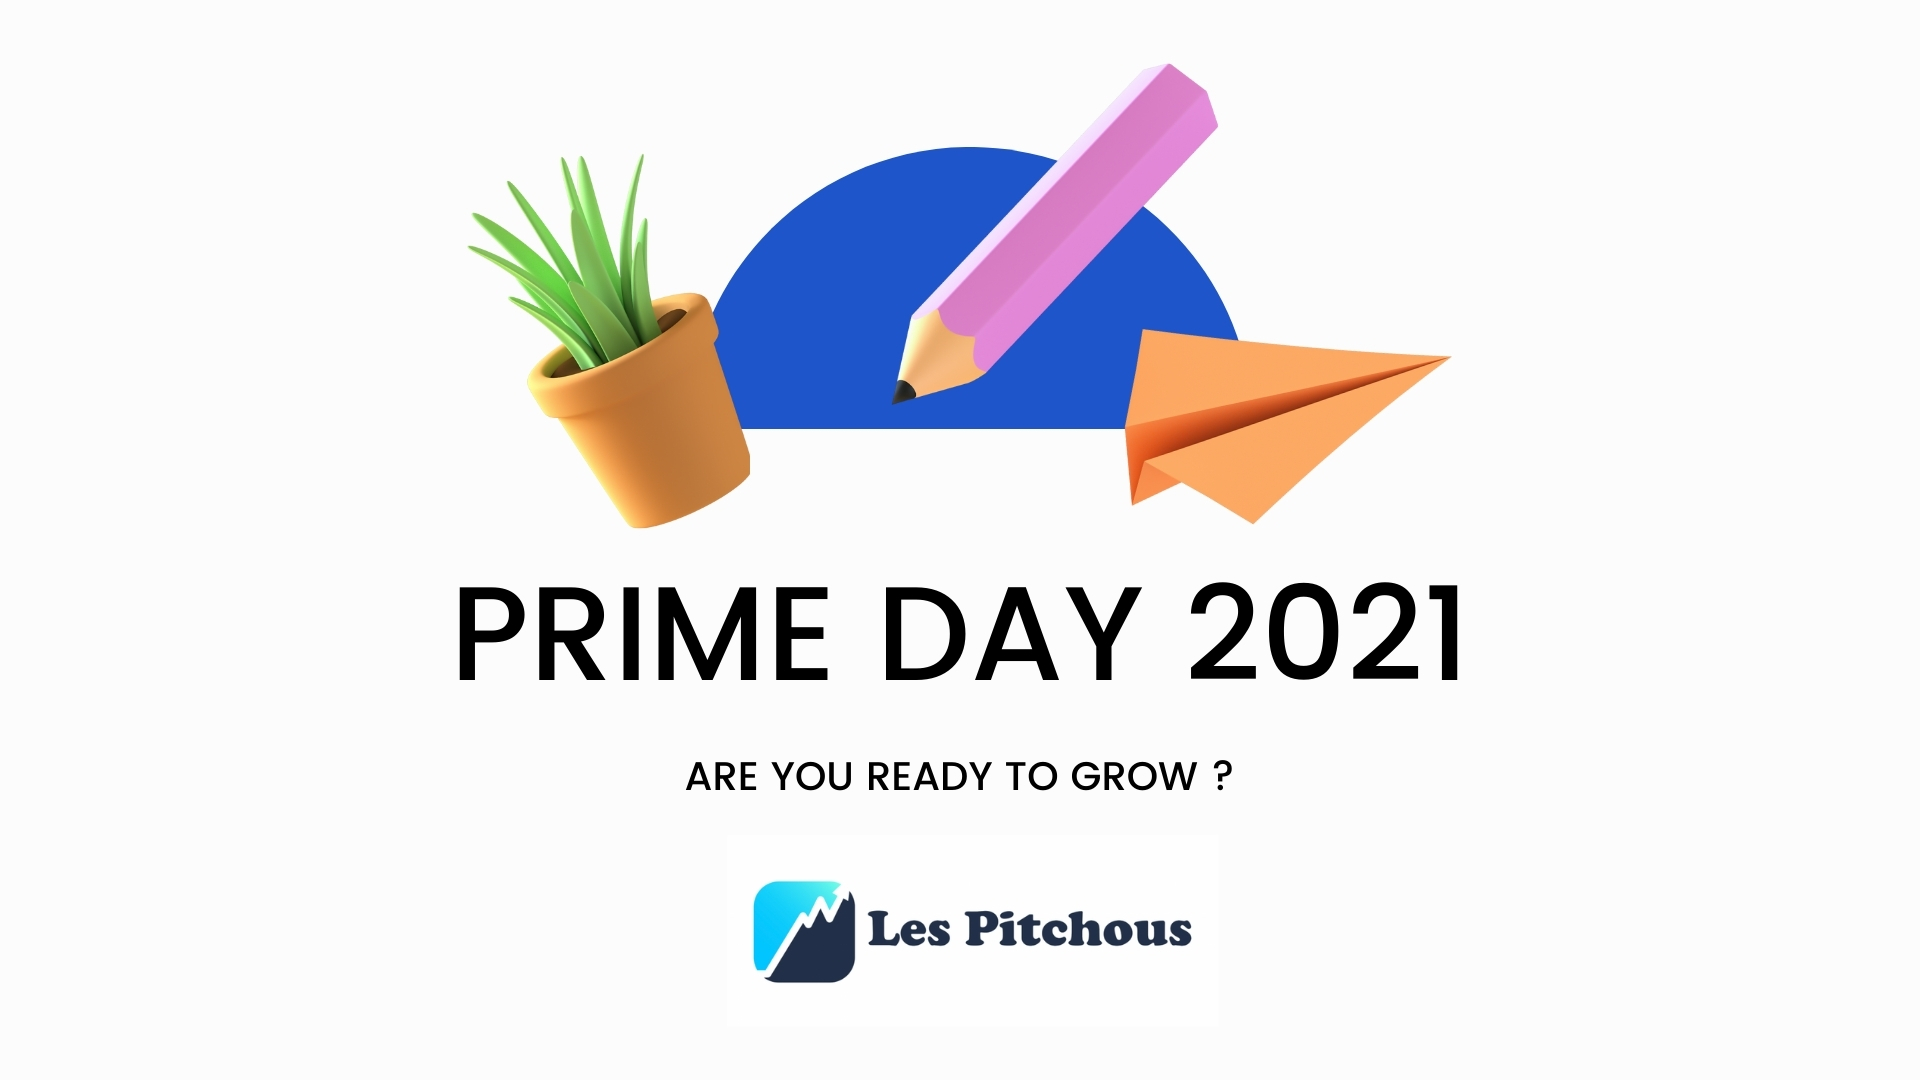 PRIME DAY 2021